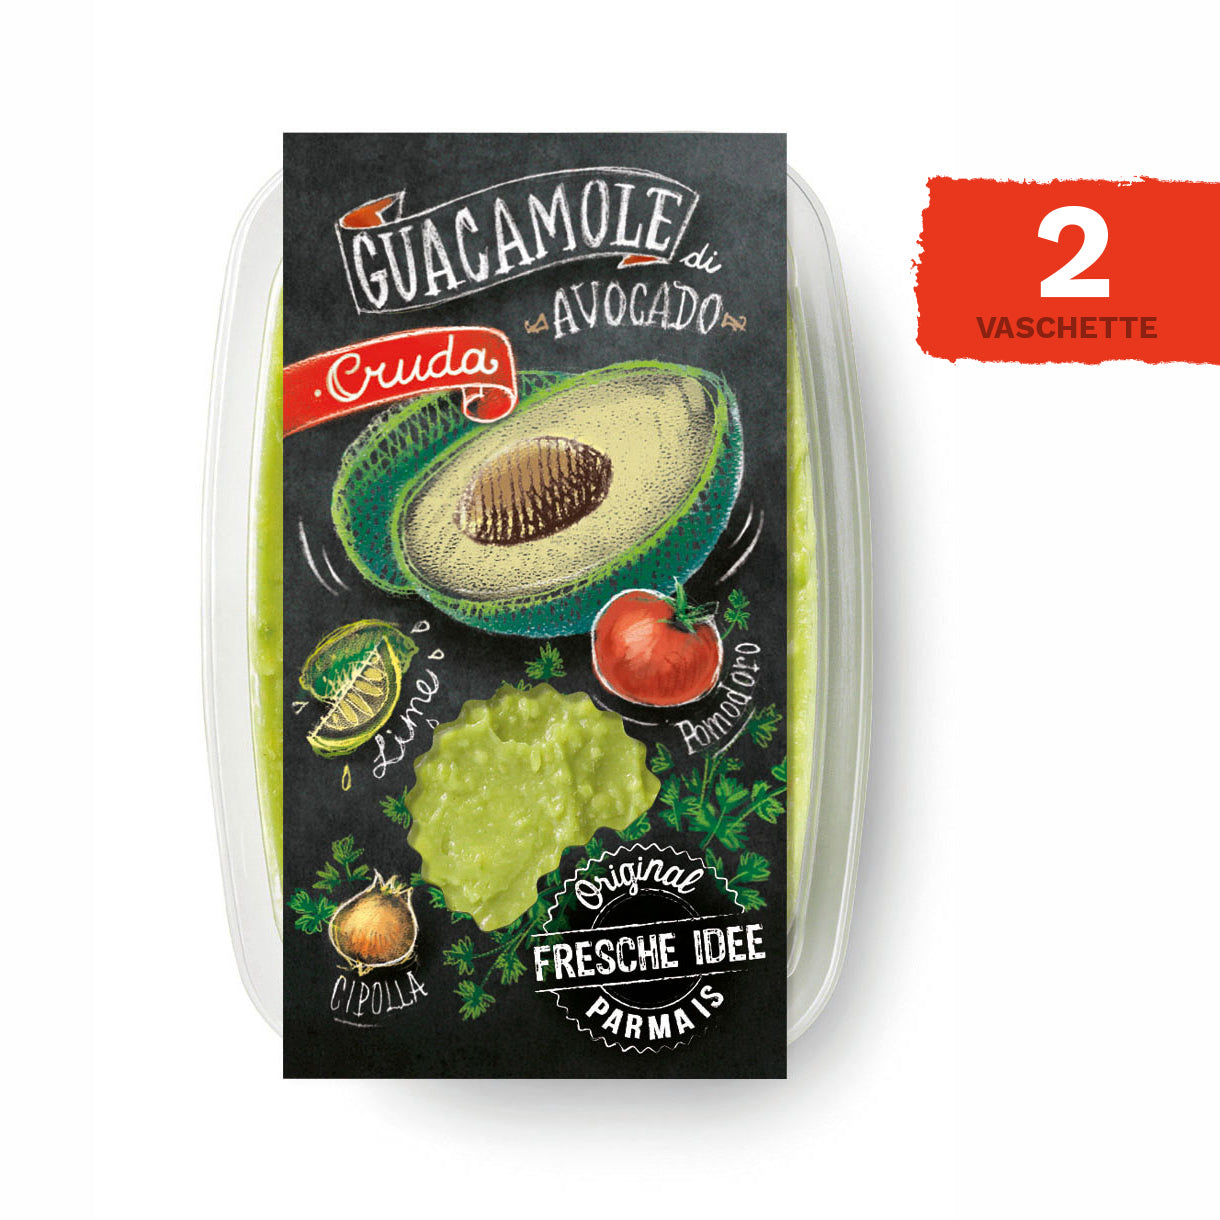 Guacamole di avocado - 2 vaschette da 150 gr